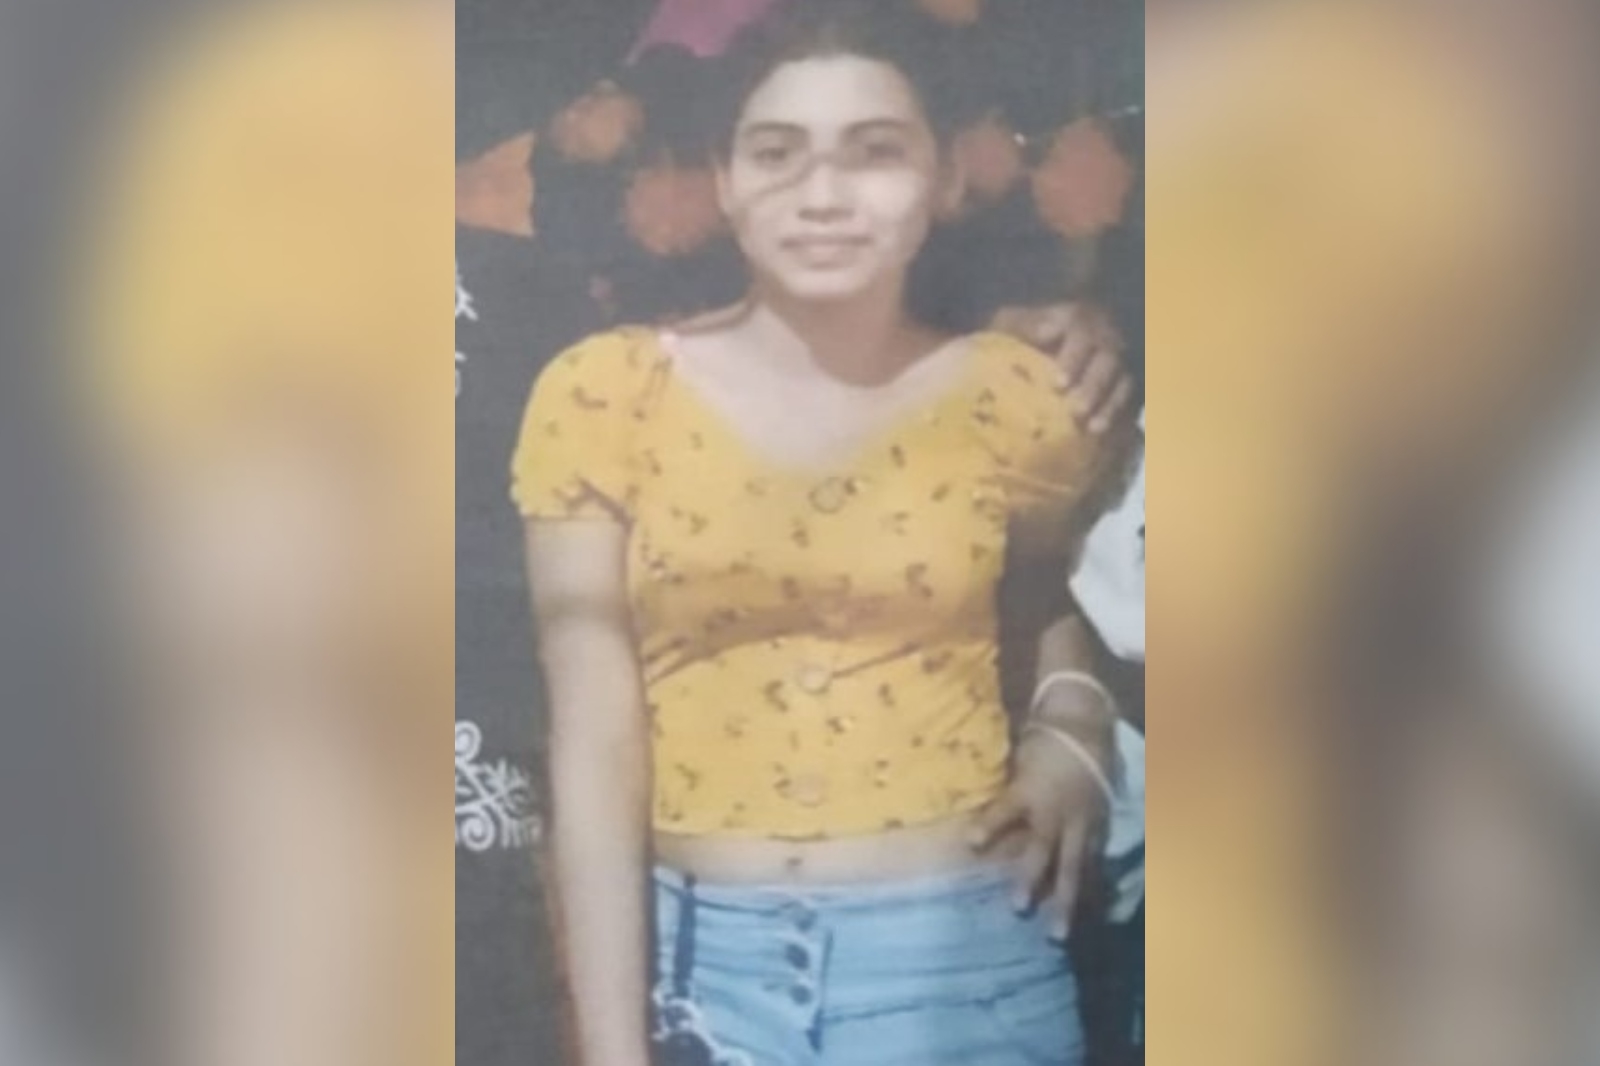 Alerta Ámber Quintana Roo: Reportan desaparición de menor de 11 años en Cancún